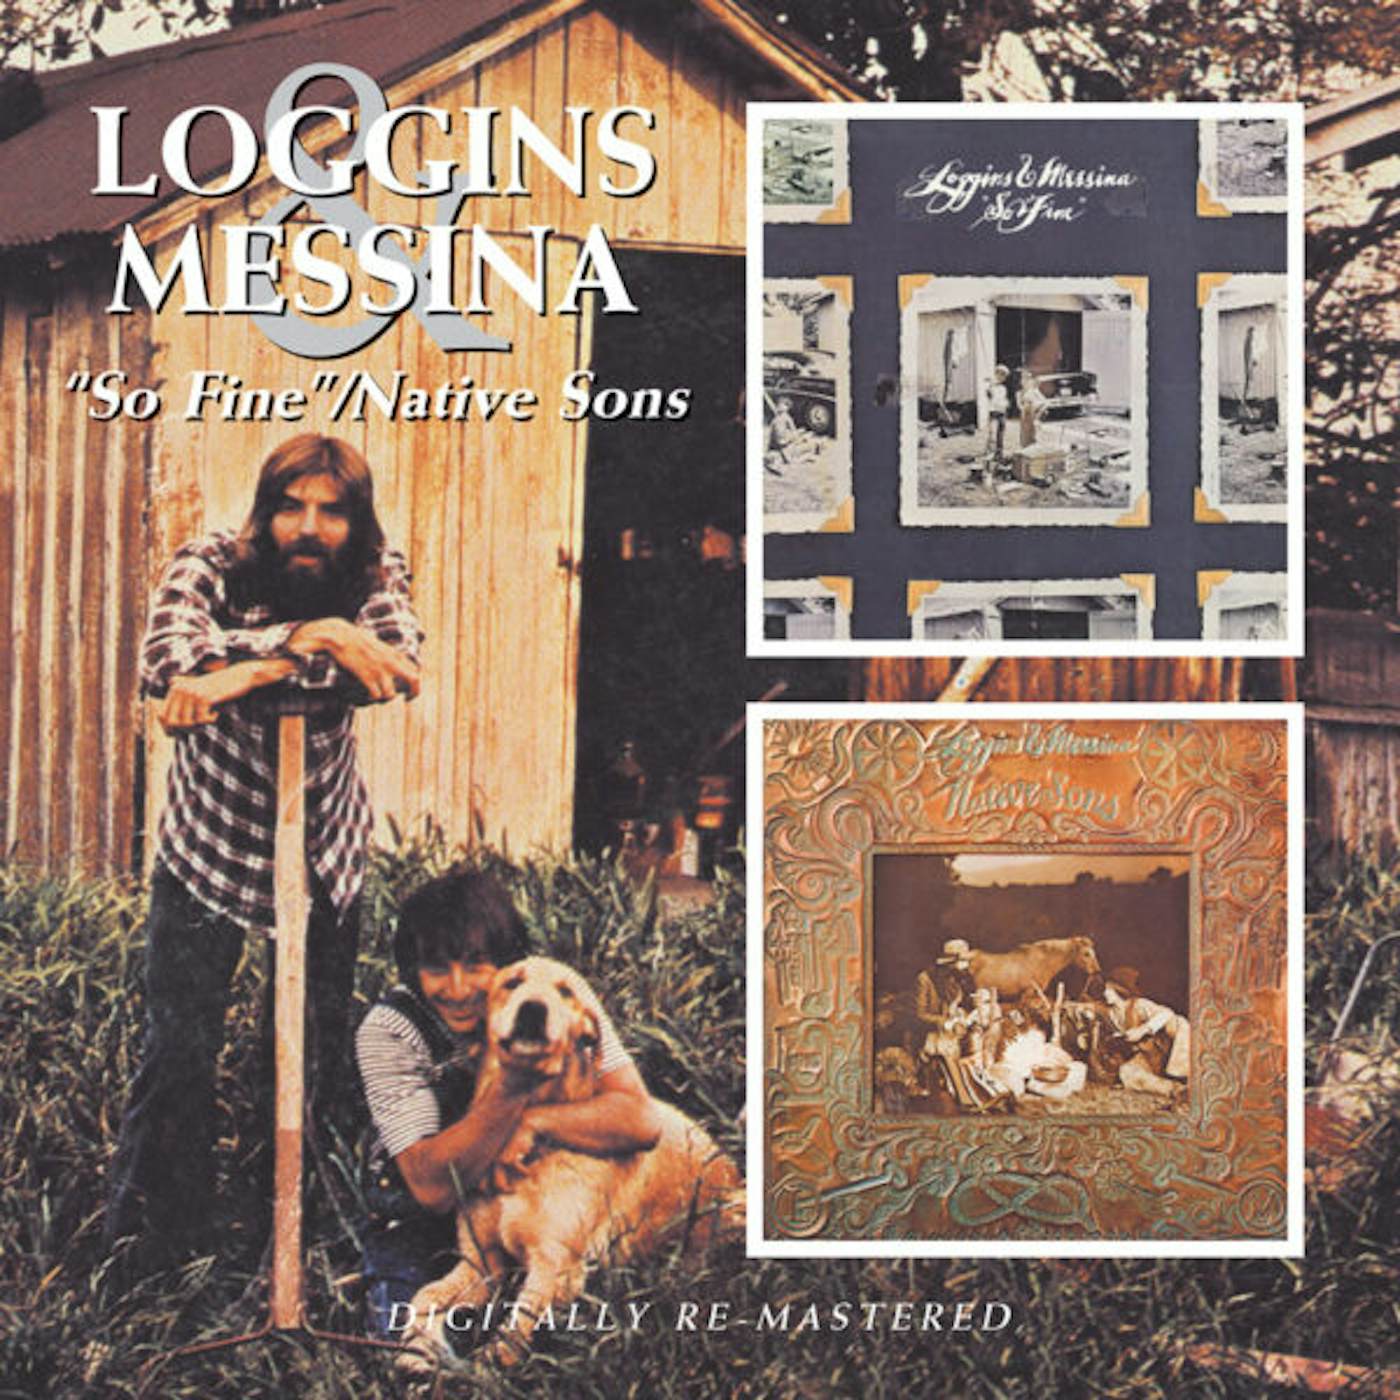 Loggins & Messina SO FINE / NATIVE SONS CD